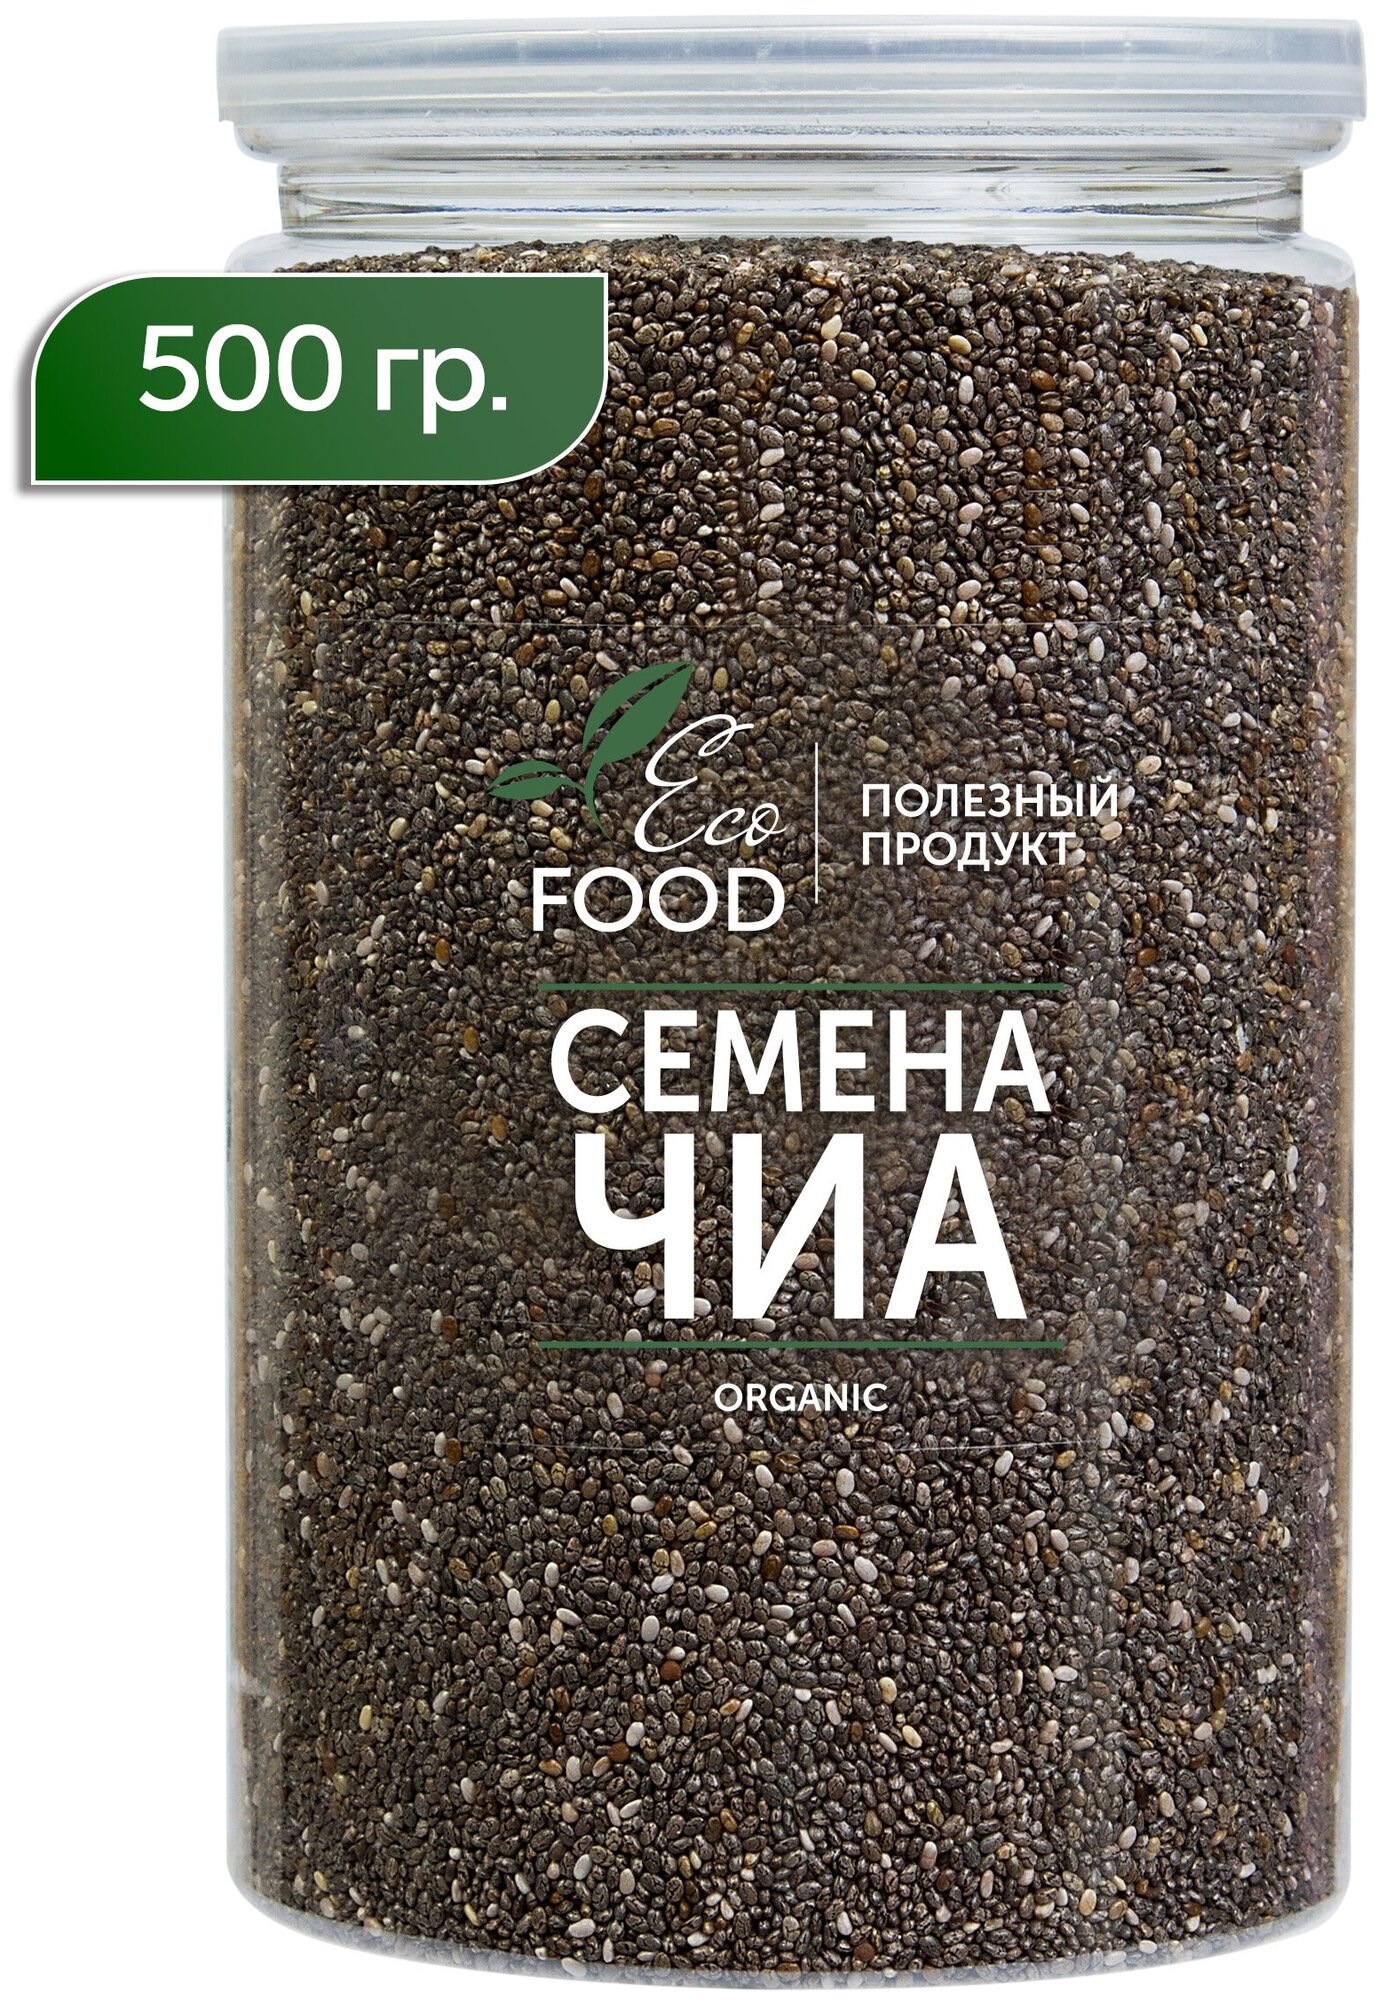 Семена чиа Chia Суперфуд для похудения и здоровья Eco Food - Полезный продукт